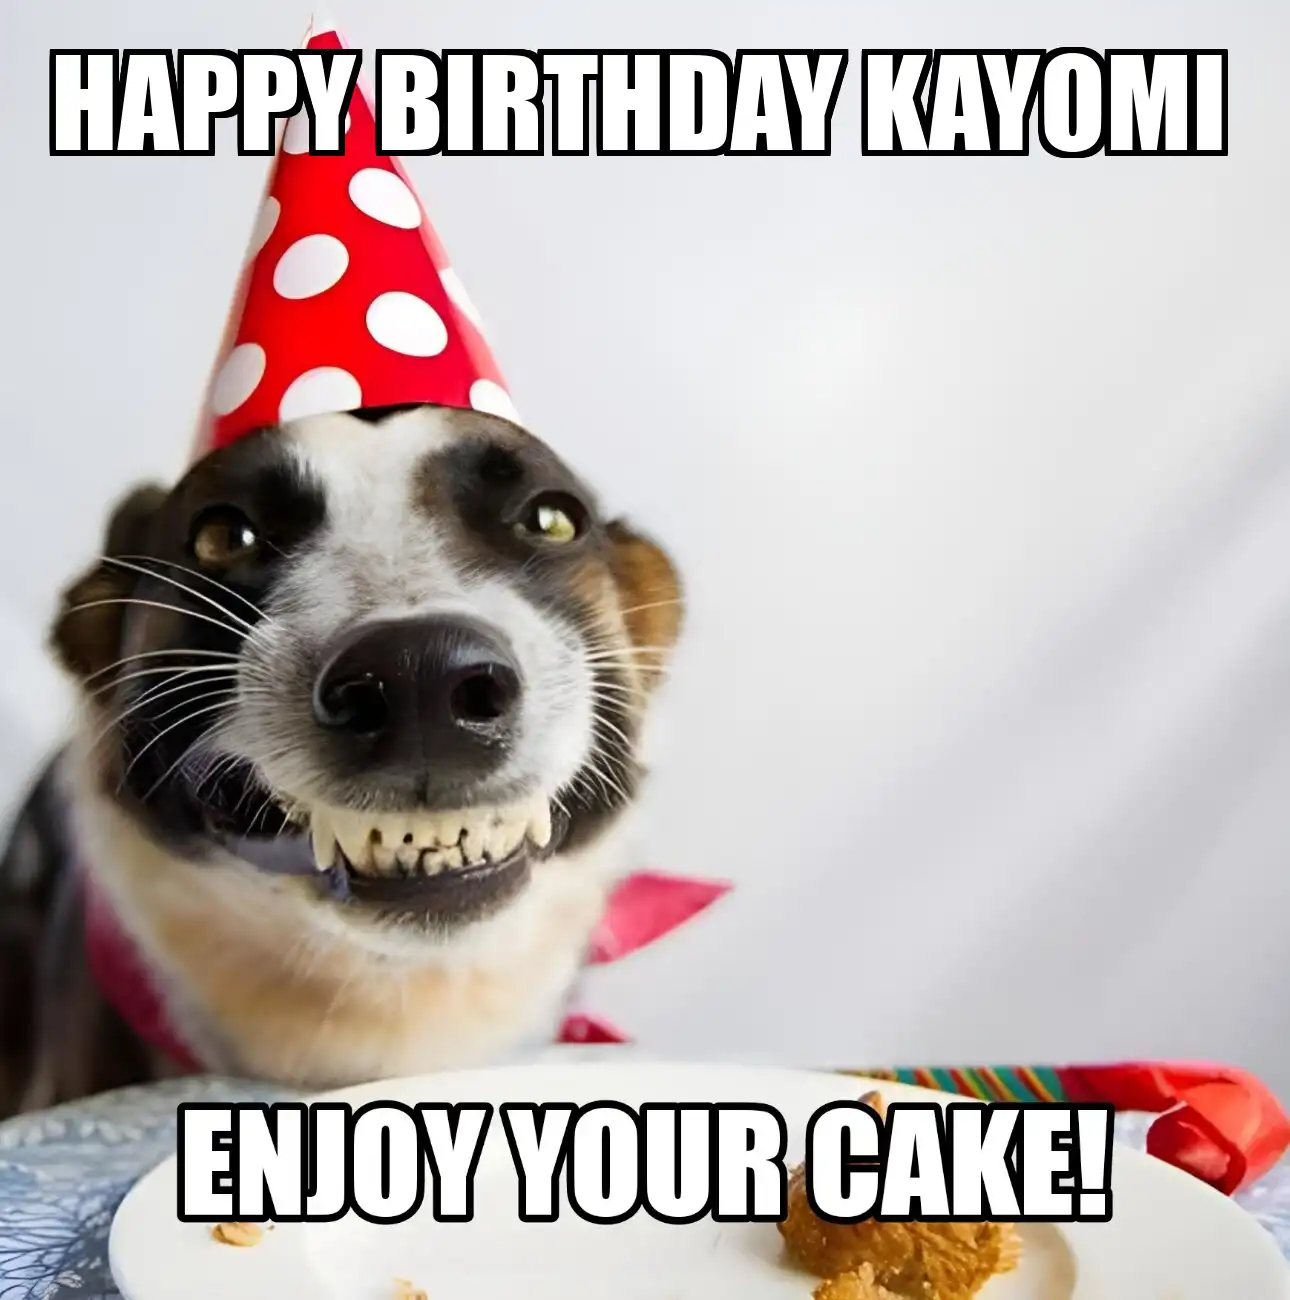 Happy Birthday Kayomi Enjoy Your Cake Dog Meme